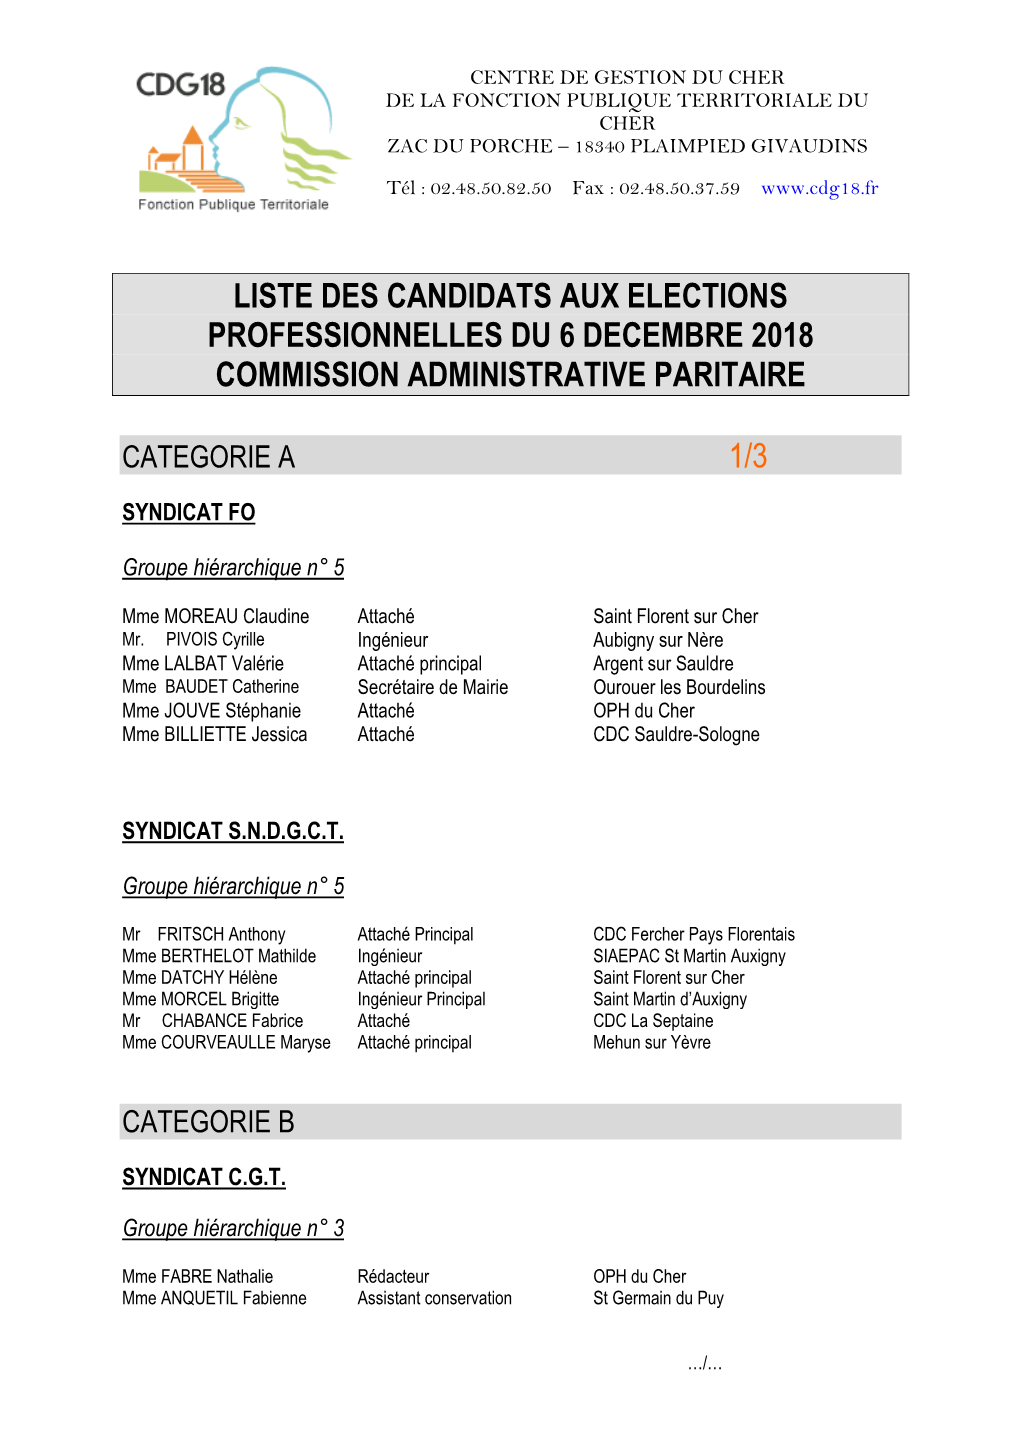 Liste Des Candidats Aux Elections Professionnelles Du 6 Decembre 2018 Commission Administrative Paritaire